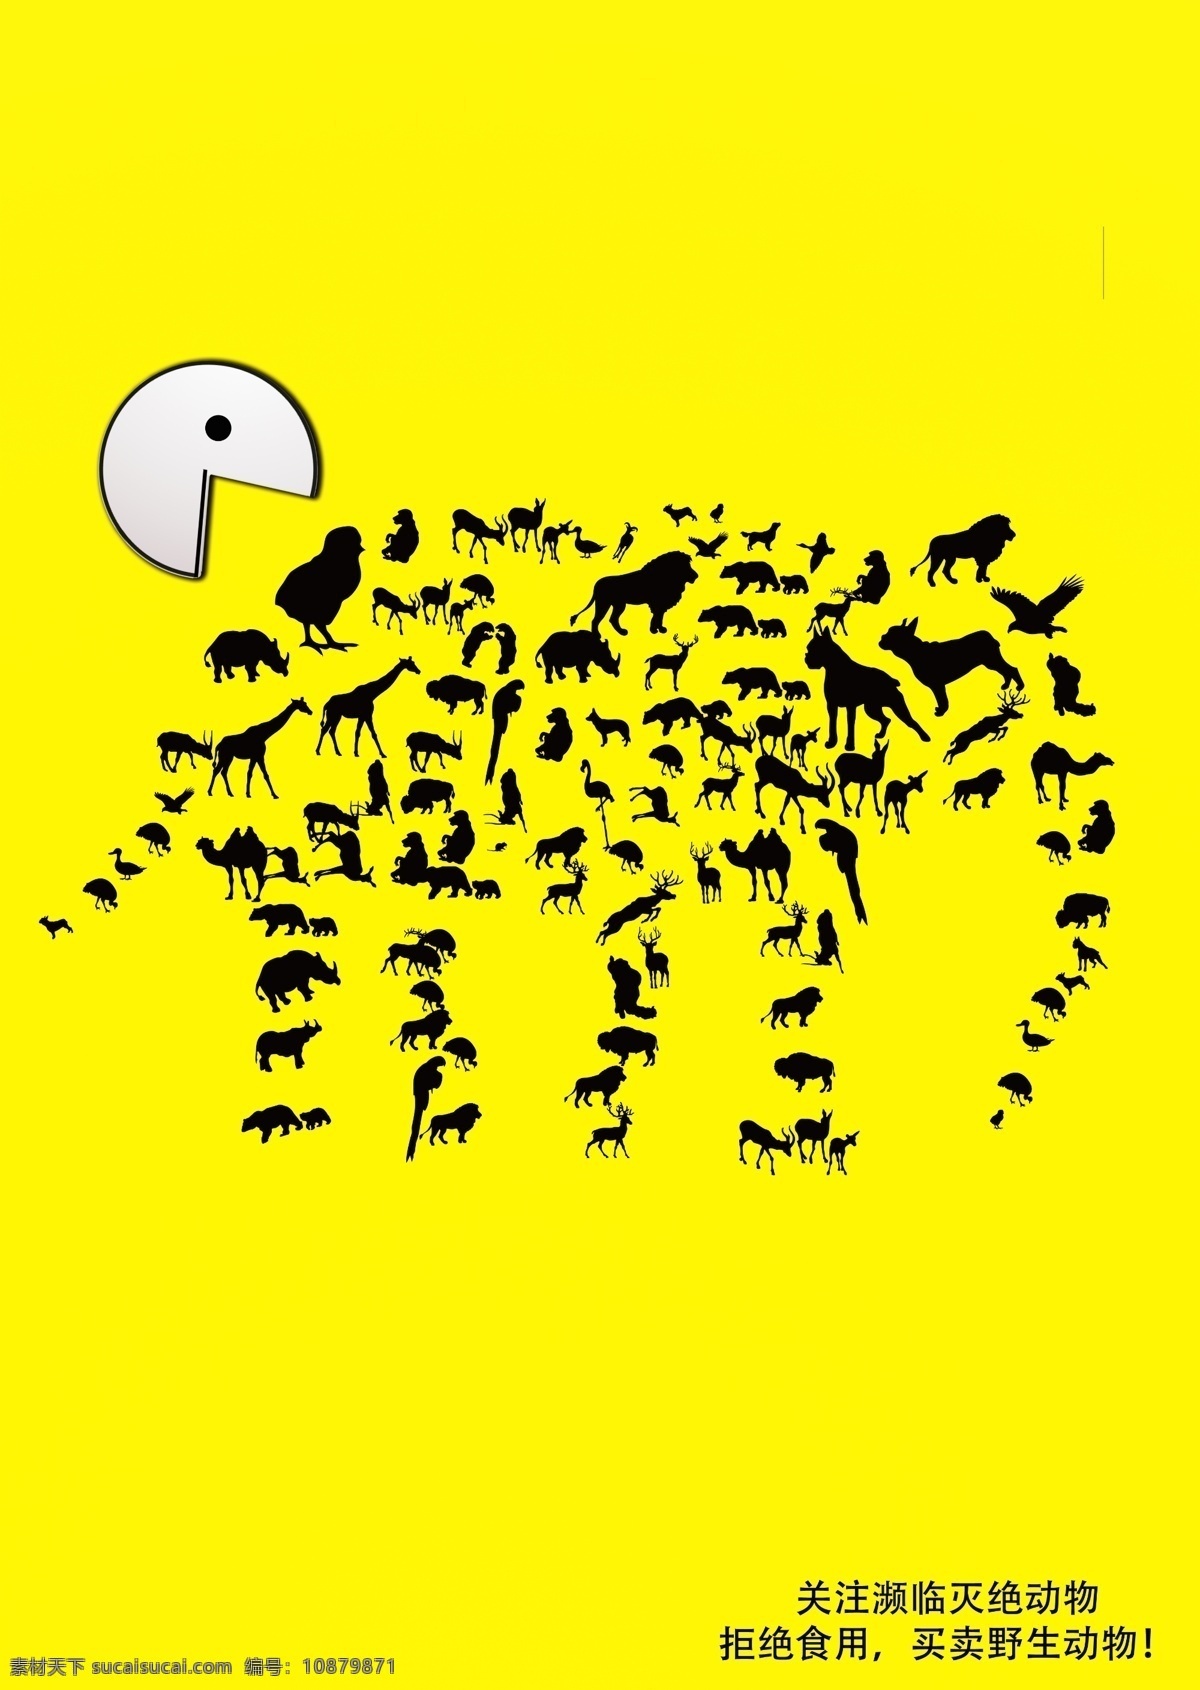 大象 保护 动物 公益 海报 黄色 公益广告 保护单位 简洁 展板